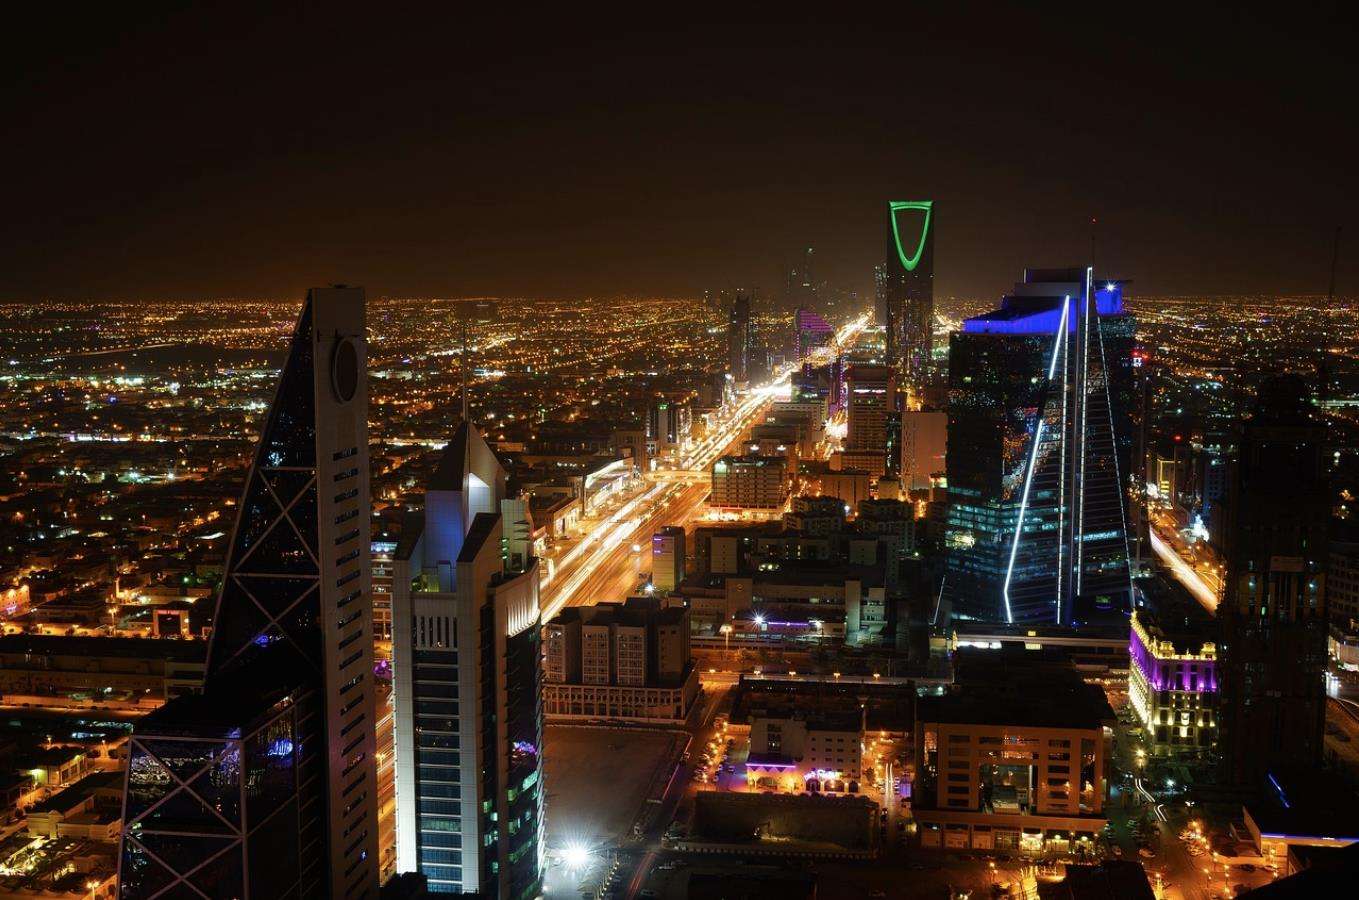 Ả Rập học Trung Quốc khi chi 500 triệu USD để xây dựng thành phố game?